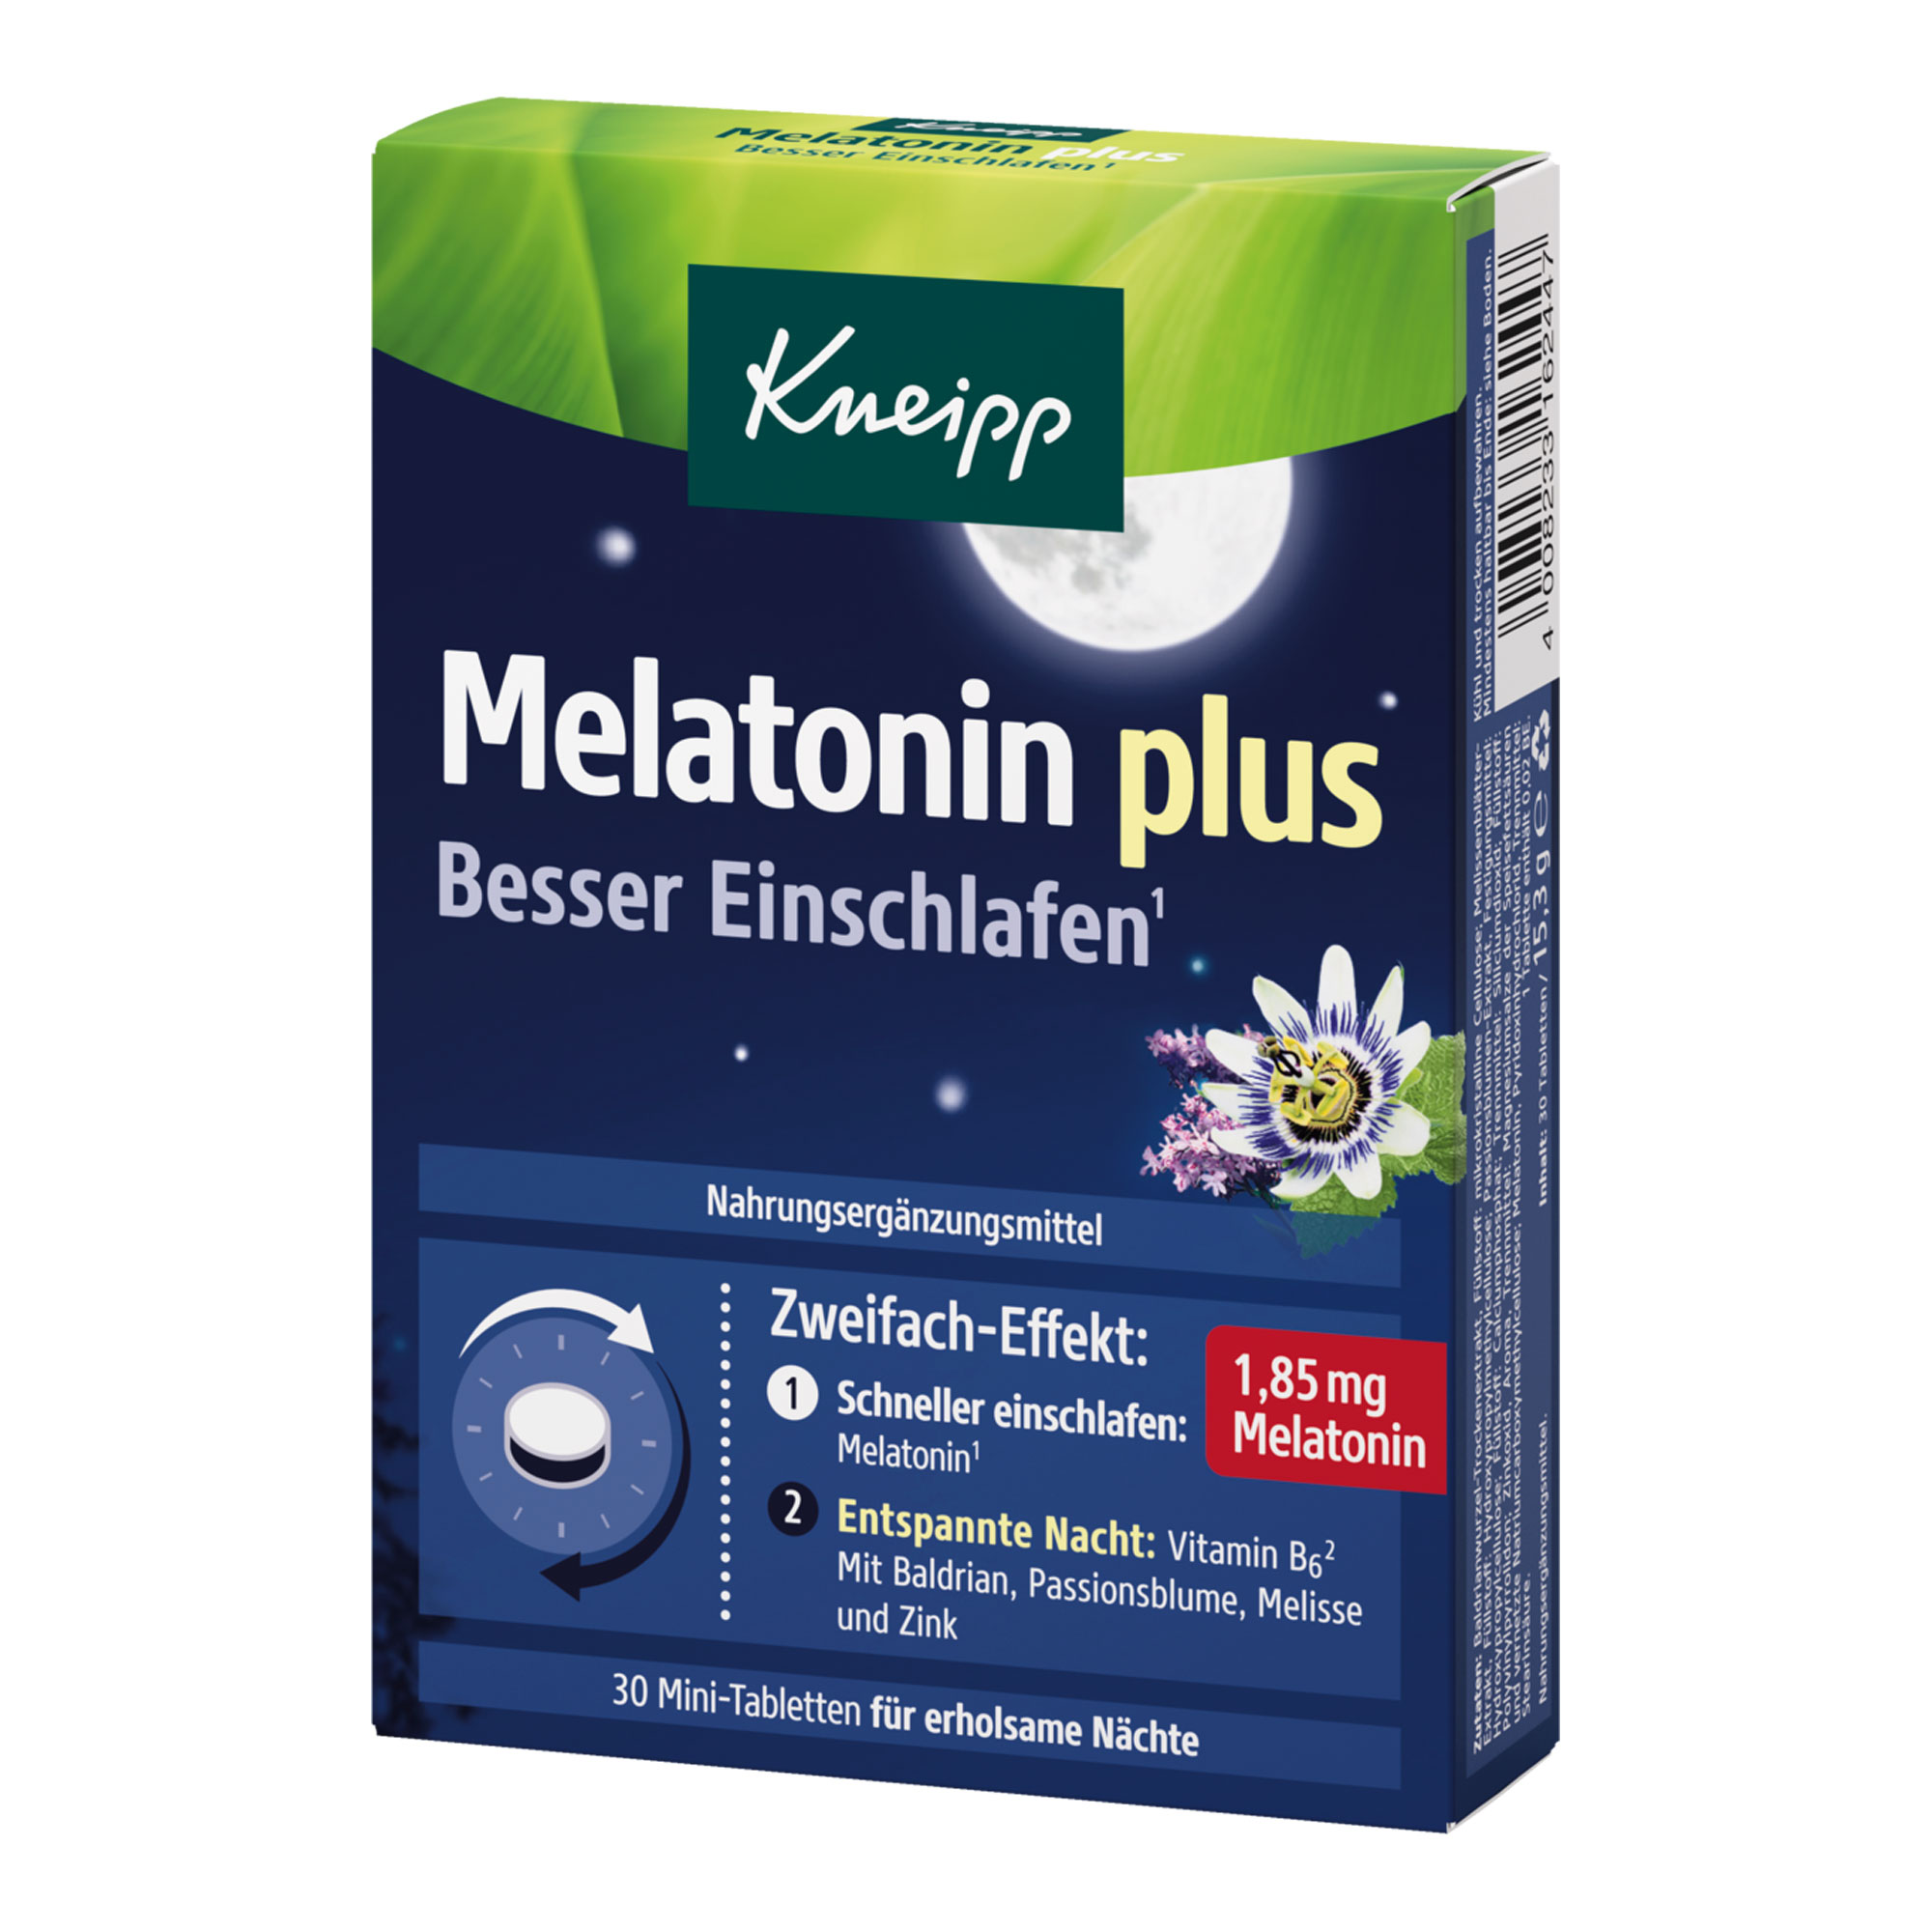 Nahrungsergänzungsmittel mit 1,85 mg Melatonin sowie einer Pflanzenkombination aus Baldrian, Melisse und Passionsblume.